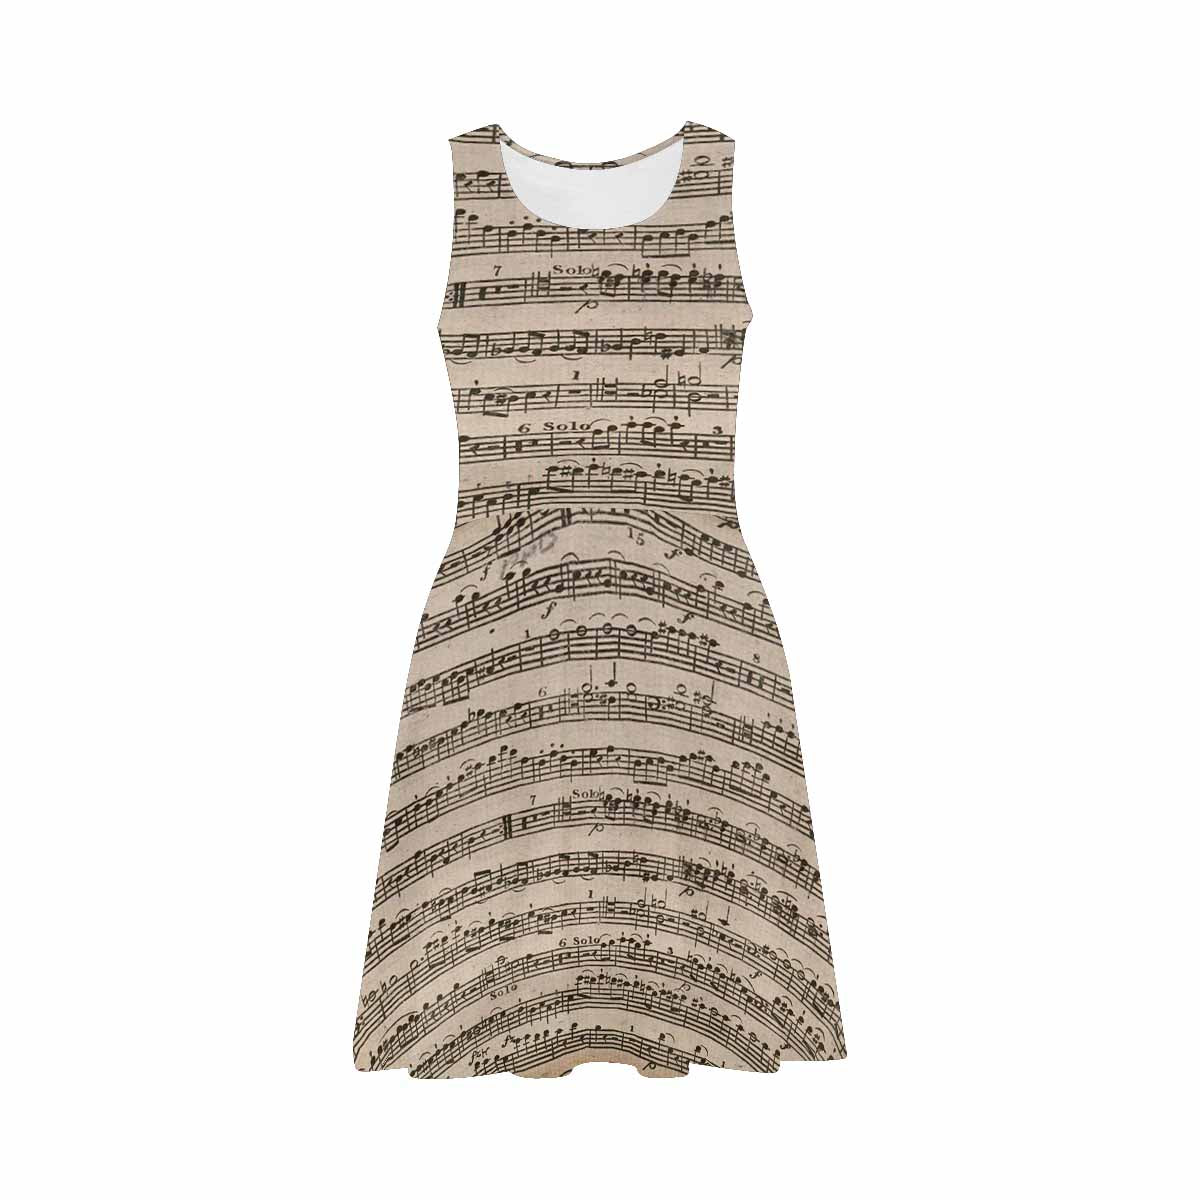 Antique General summer dress, MODEL 09534, design 58